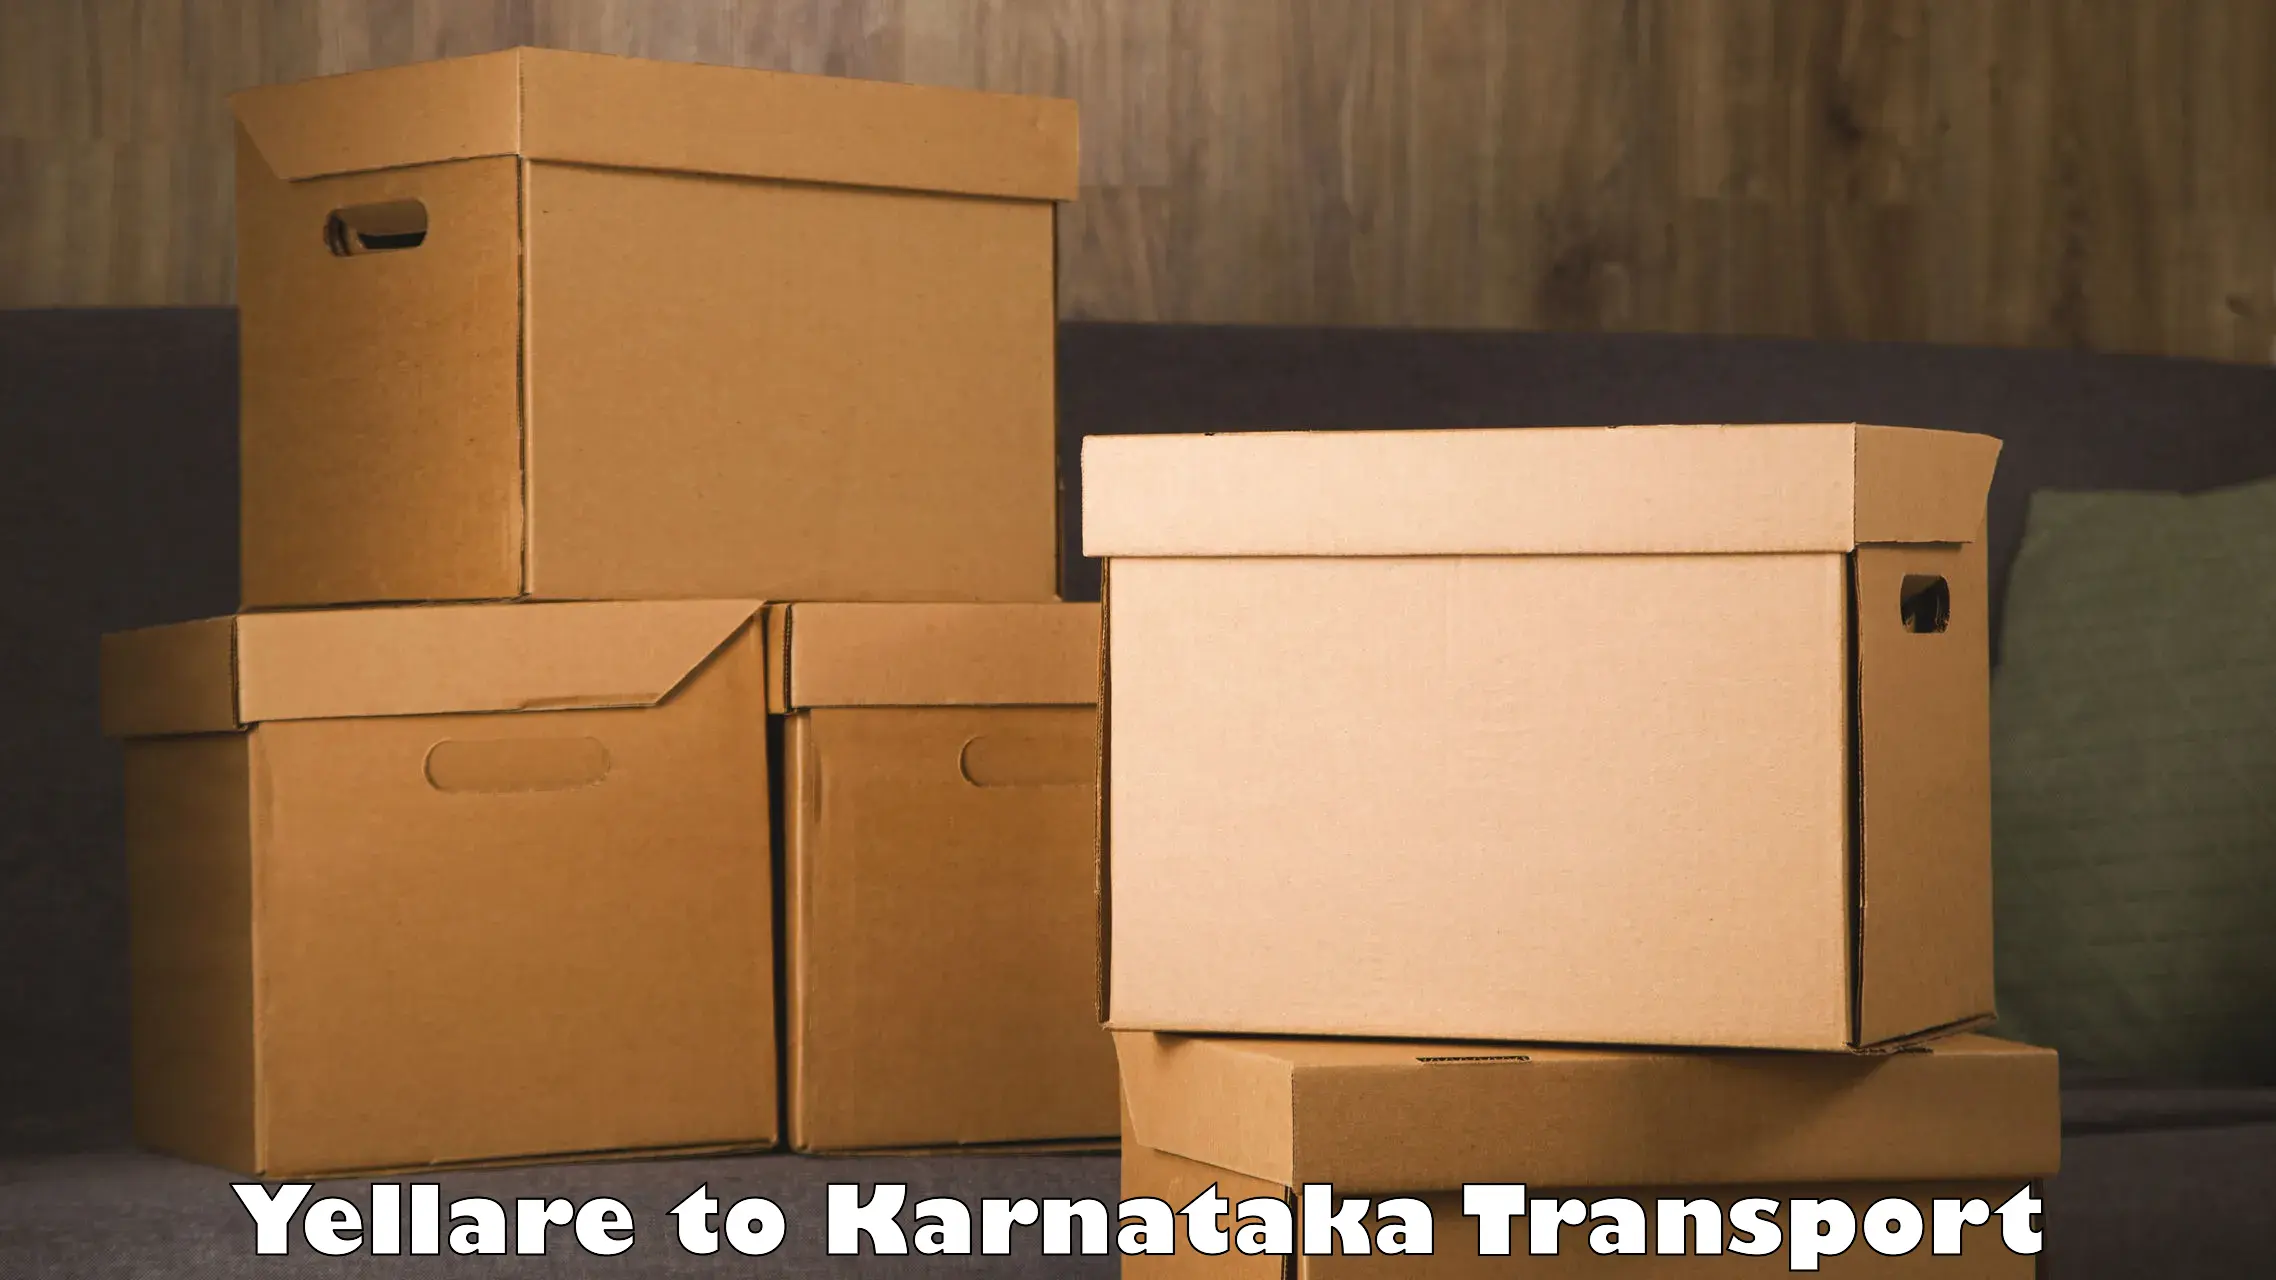 Online transport booking Yellare to Ramanagara